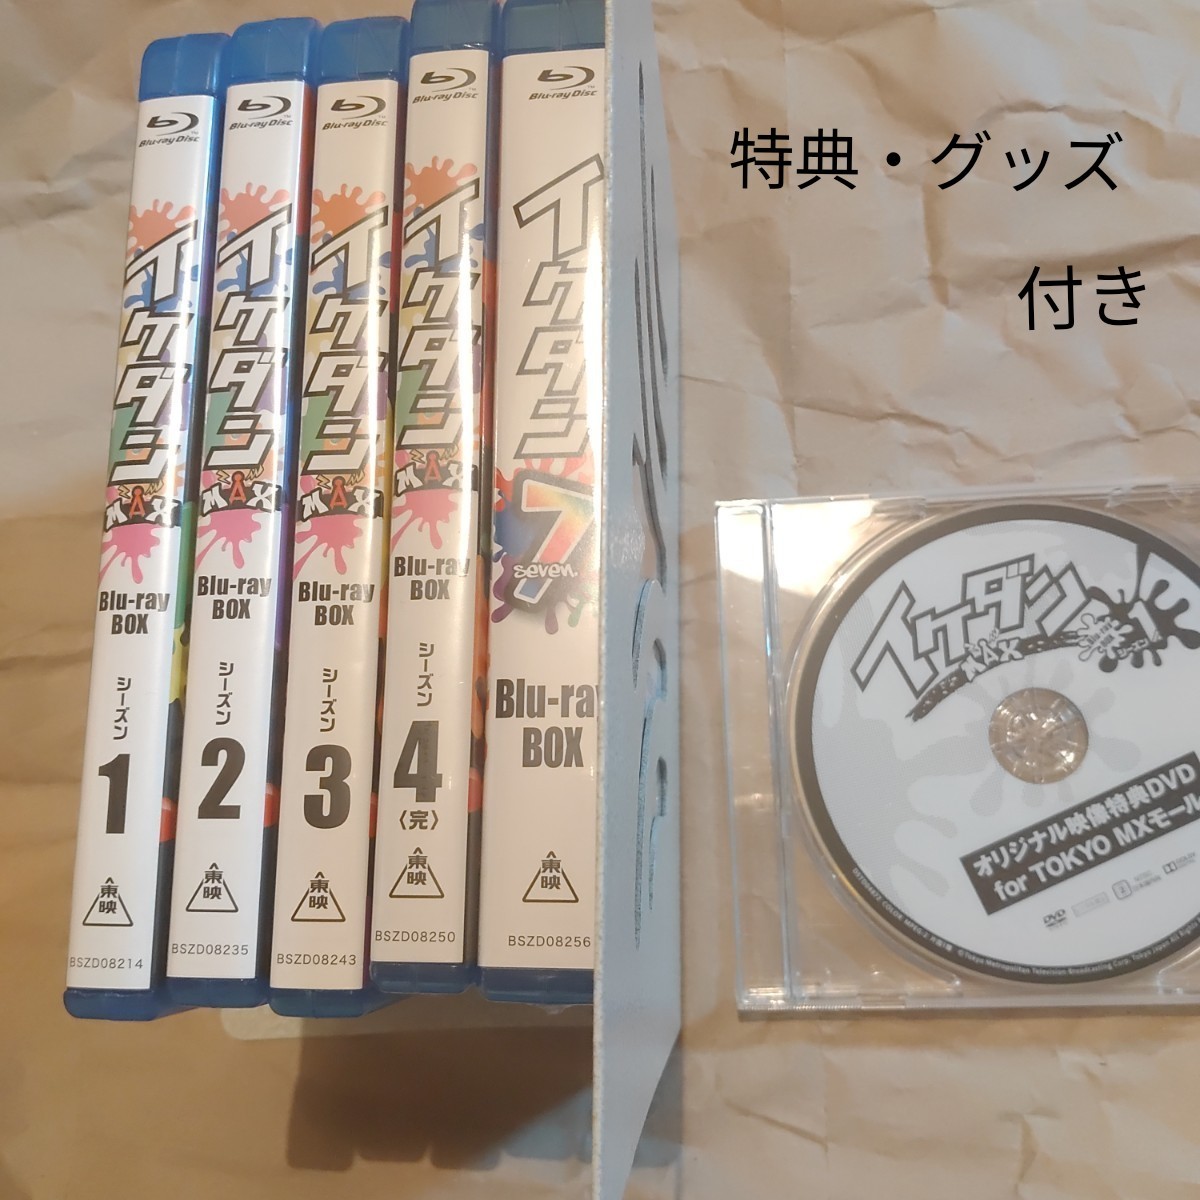 イケダンMAX イケダン7 Blu-ray 特典付き コレクション、趣味